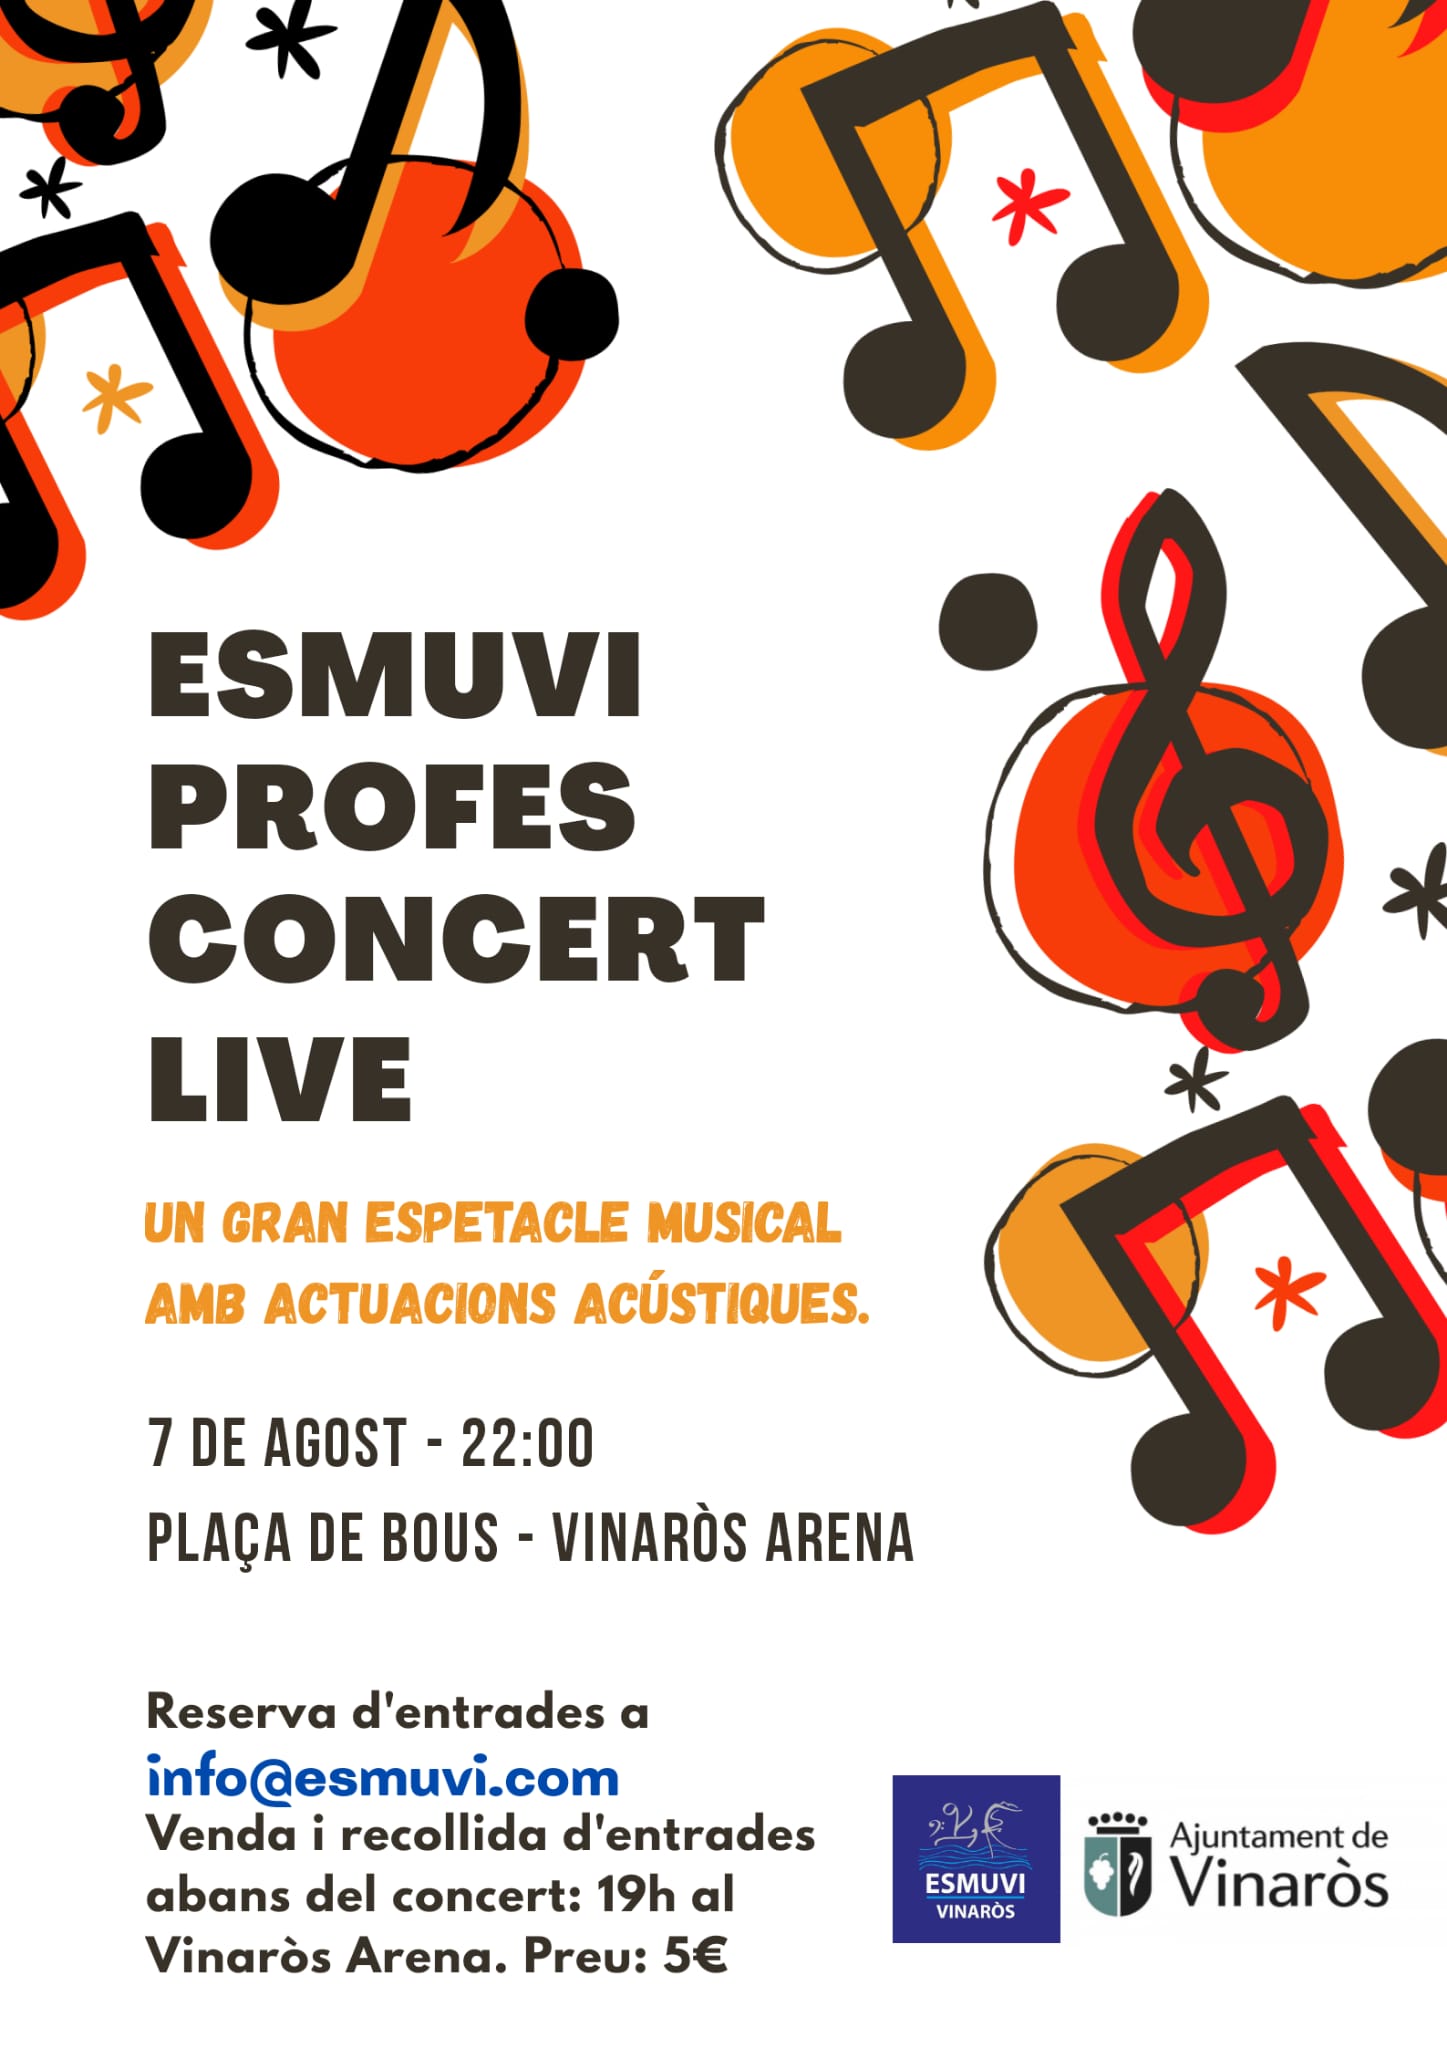 Esmuvi Profes Concert Live